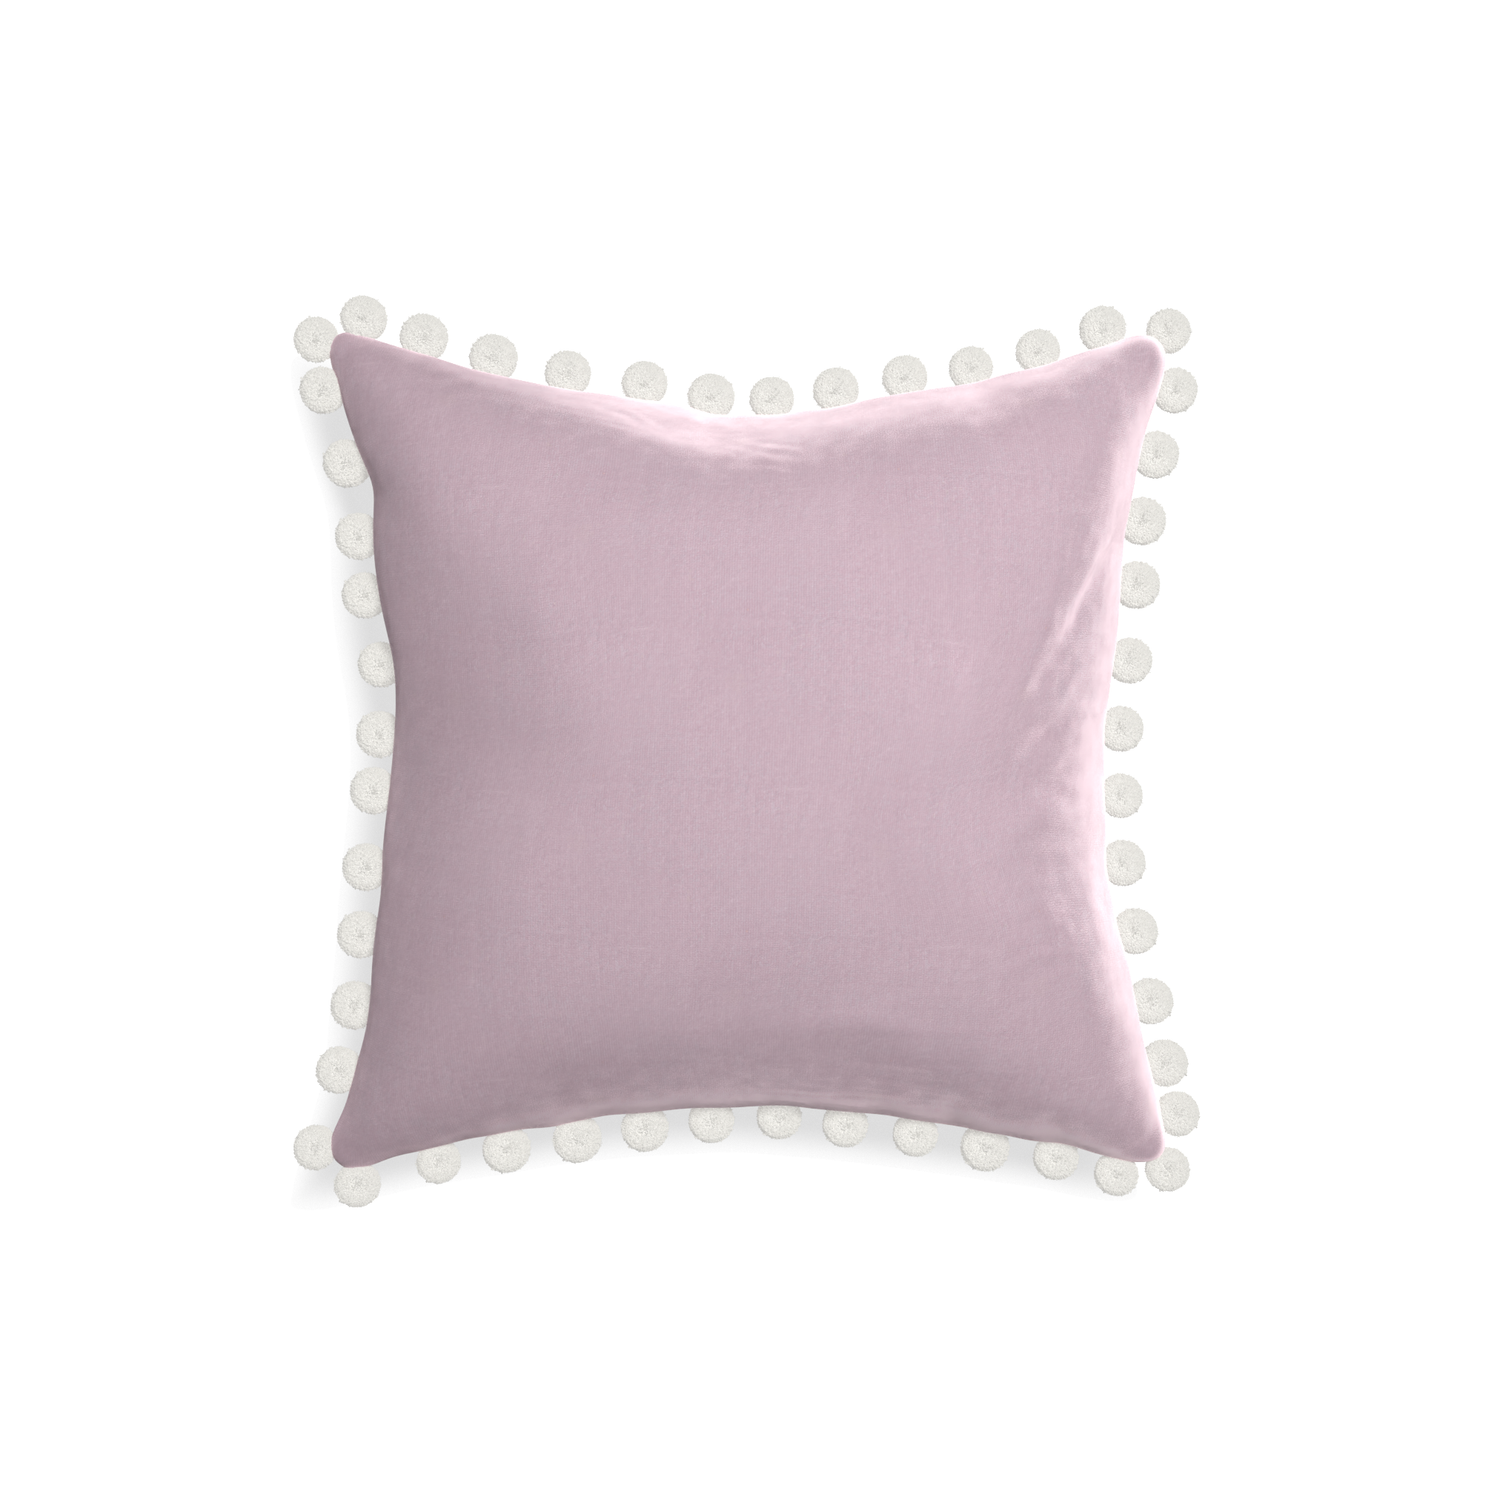 square lilac velvet pillow with white pom poms